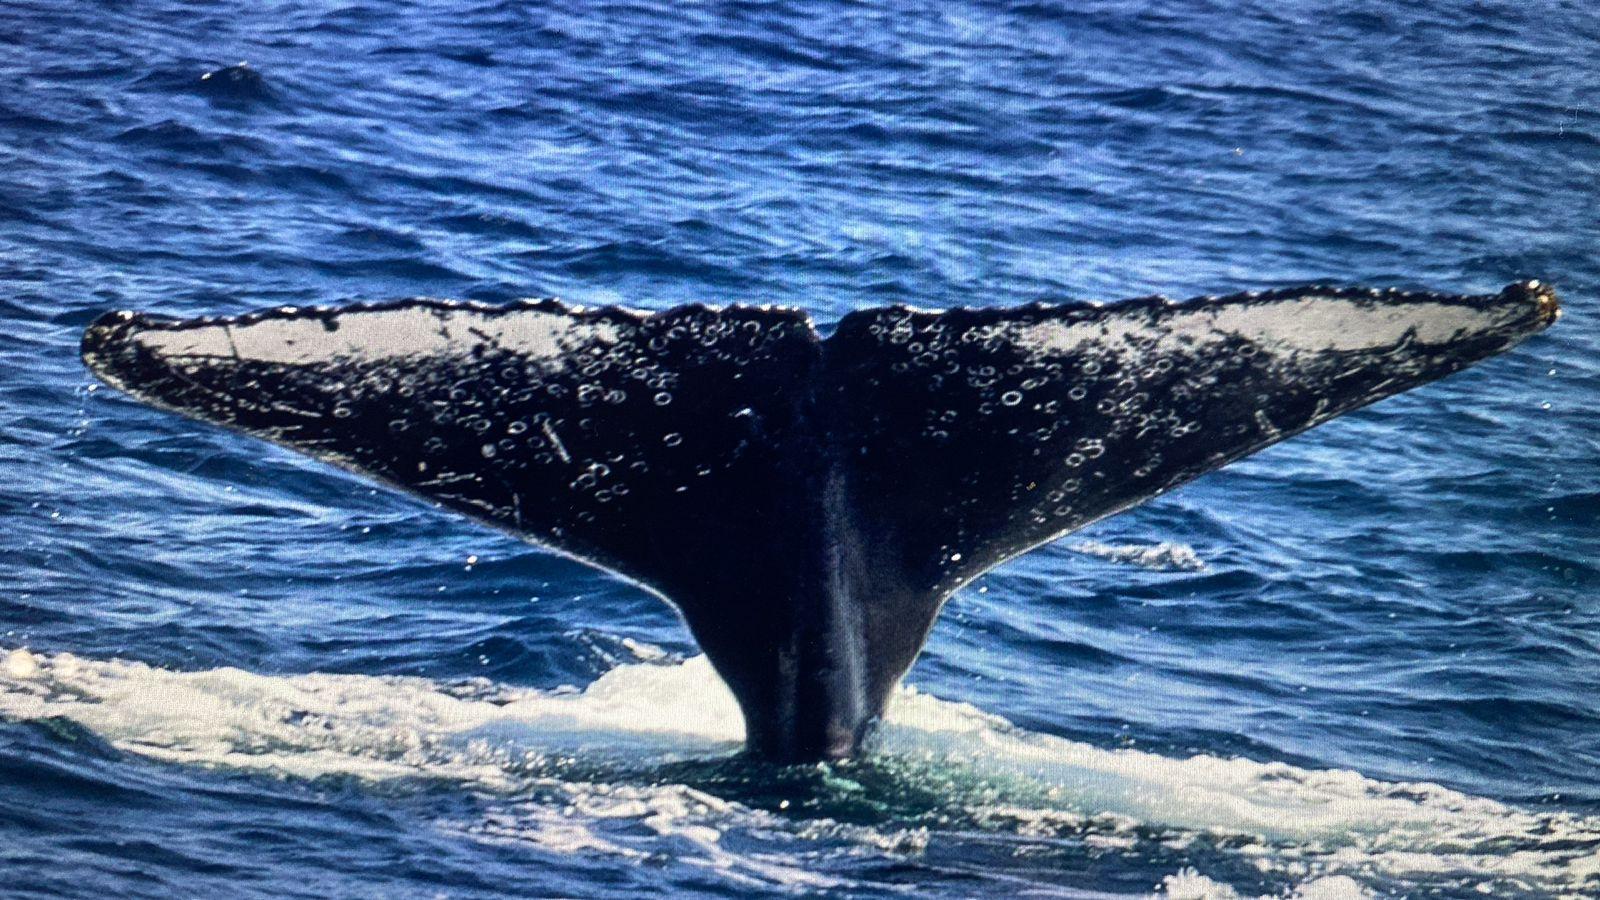 Jubartes começam a chegar e São Sebastião inicia ativação da temporada de baleias